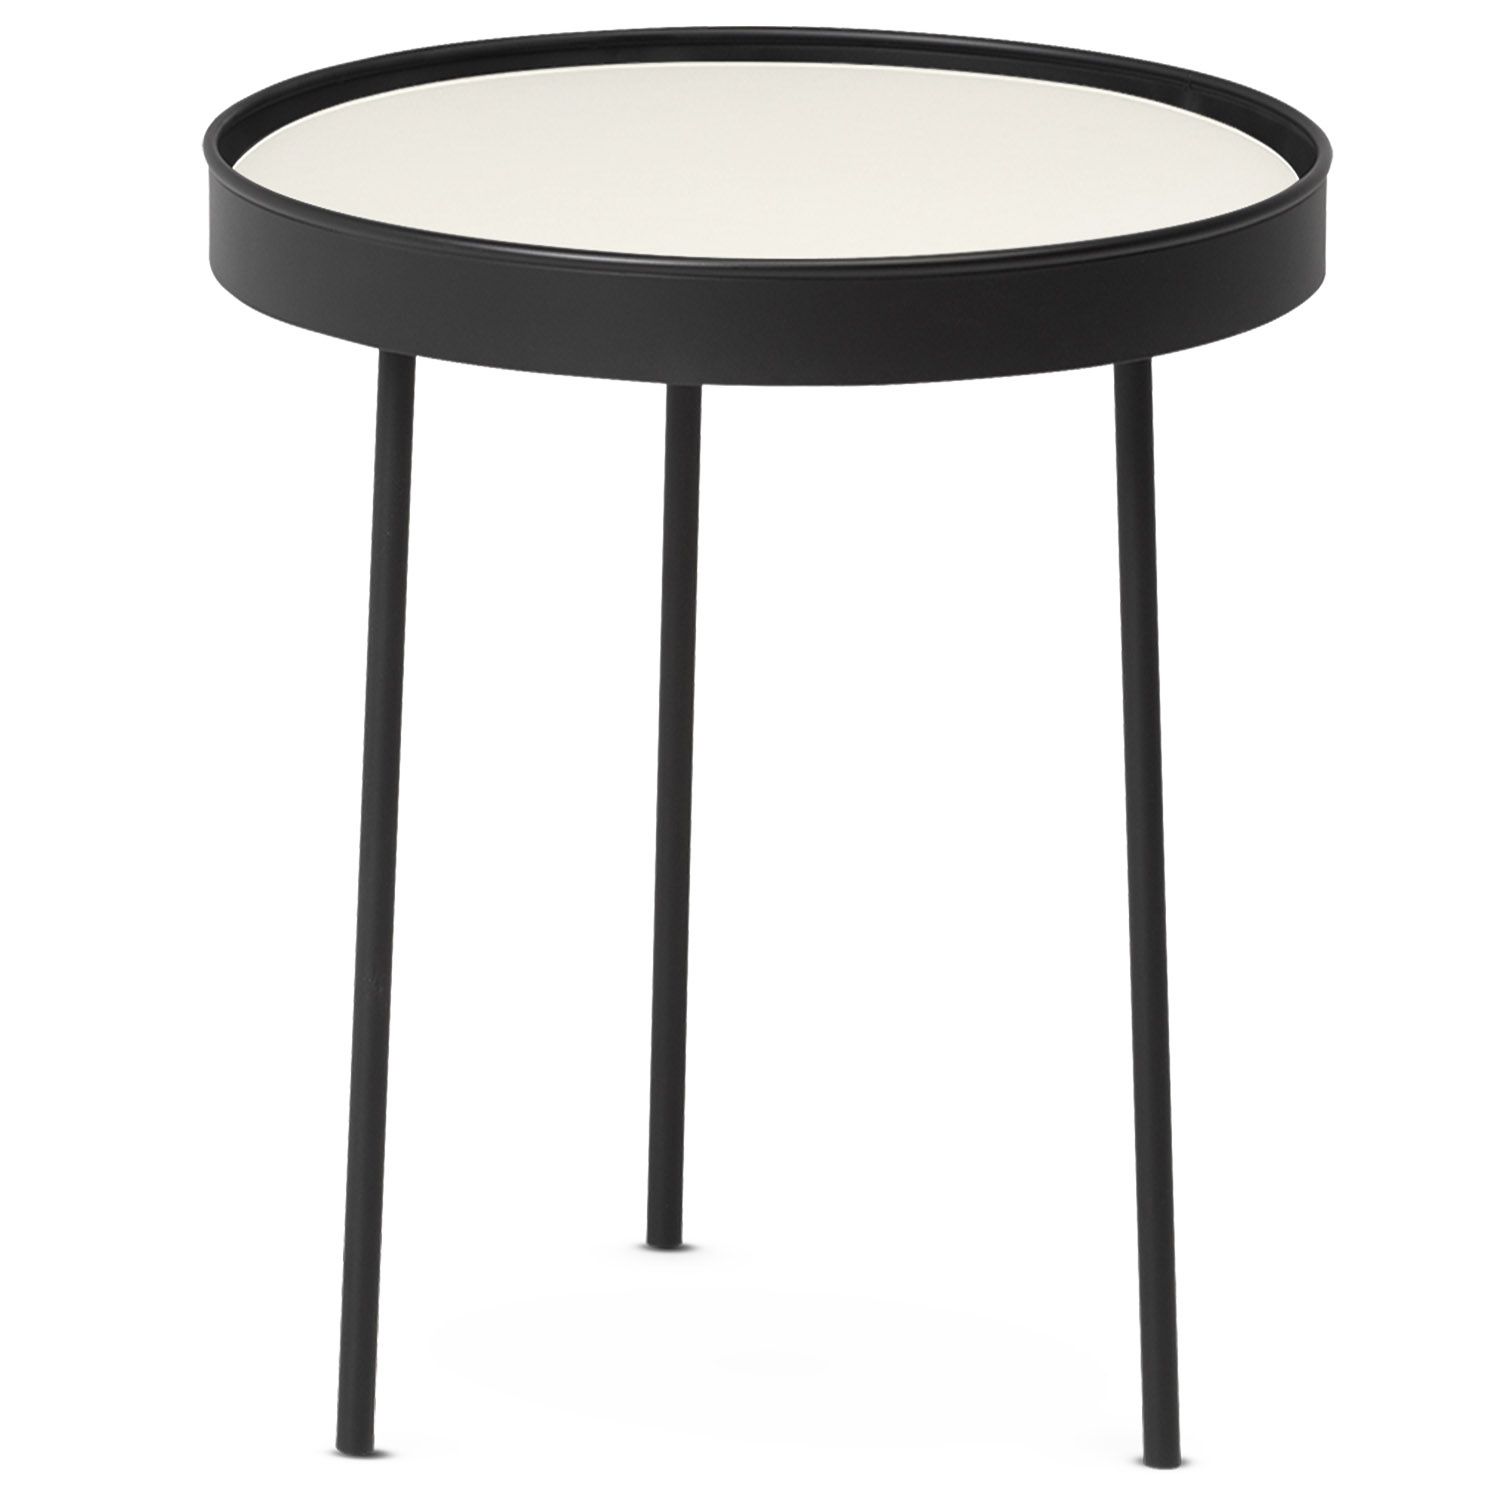 Northern designové konferenční stoly Stilk(průměr 45 cm) - DESIGNPROPAGANDA